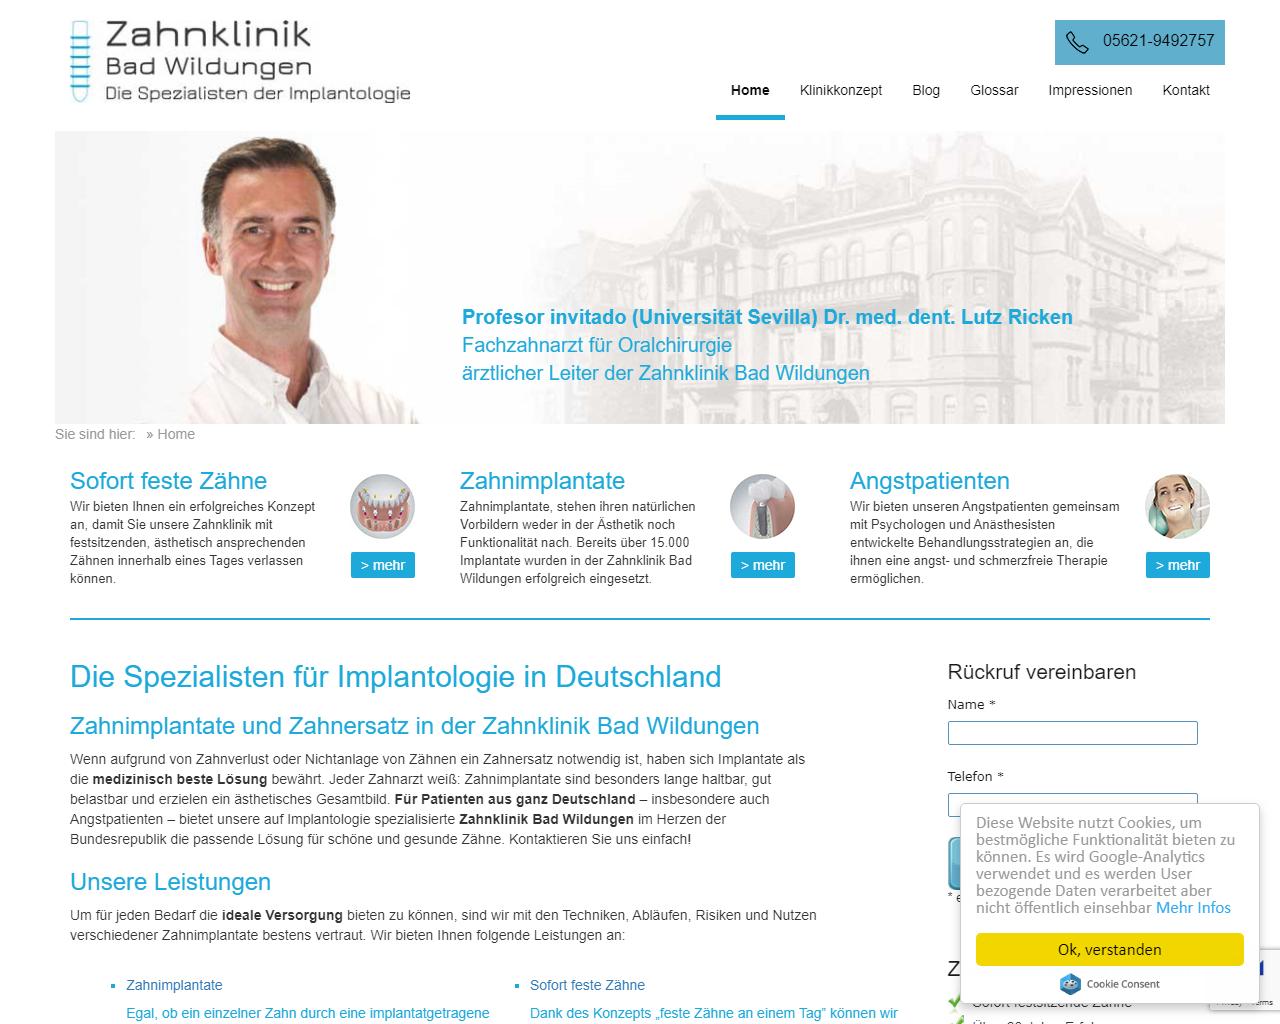 Zahnklinik Bad Wildungen GmbH<br> Ärztlicher Leiter:<br> Prof. Dr. med. dent. Lutz Ricken